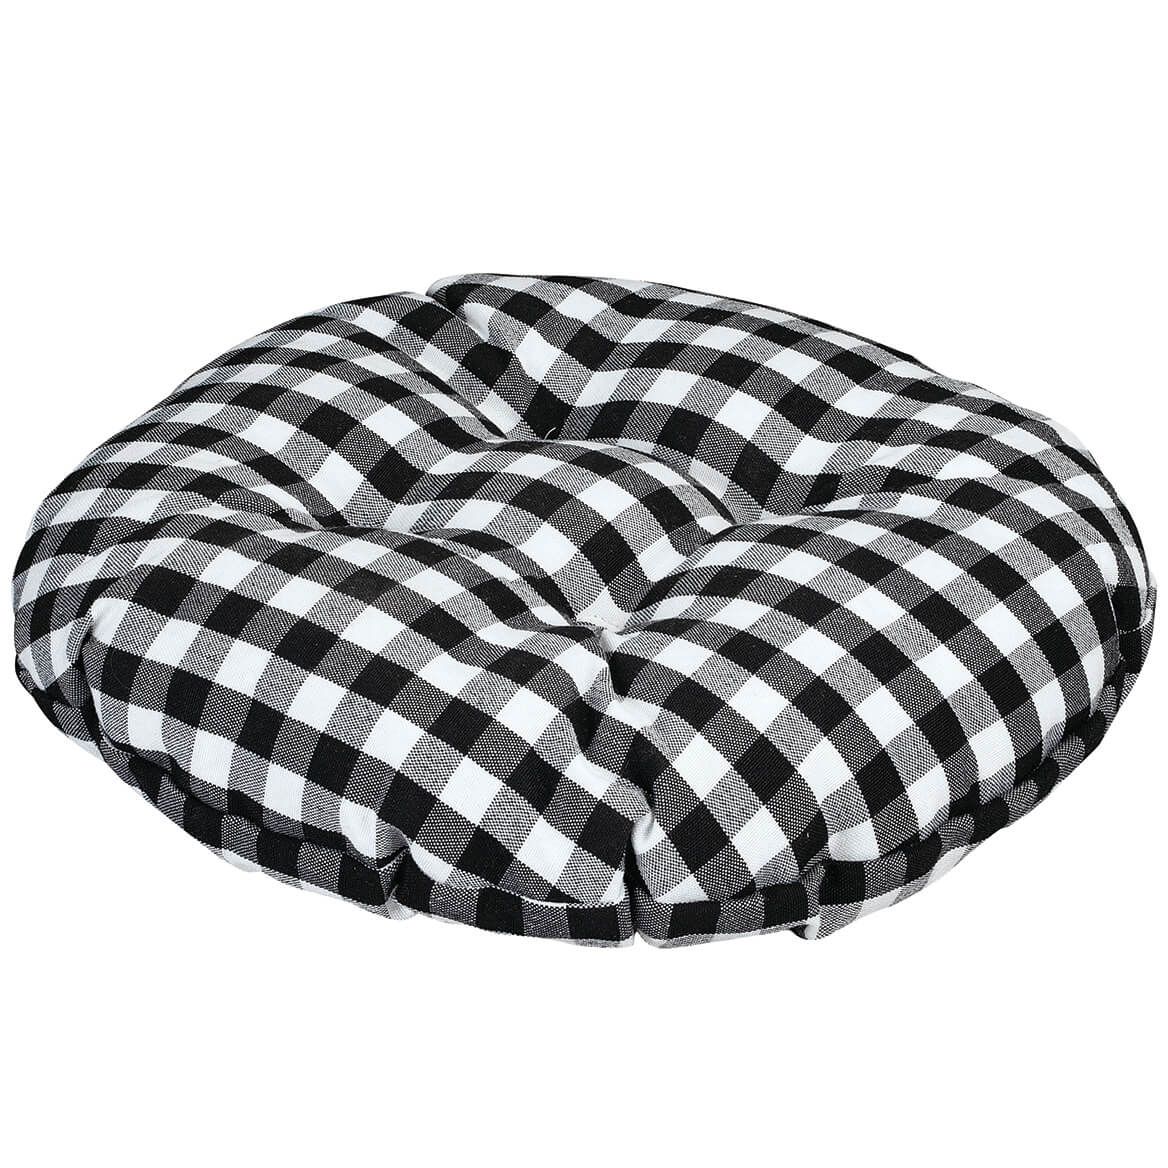 The Ava Bar Stool Cushion by OakRidge™ + '-' + 372700